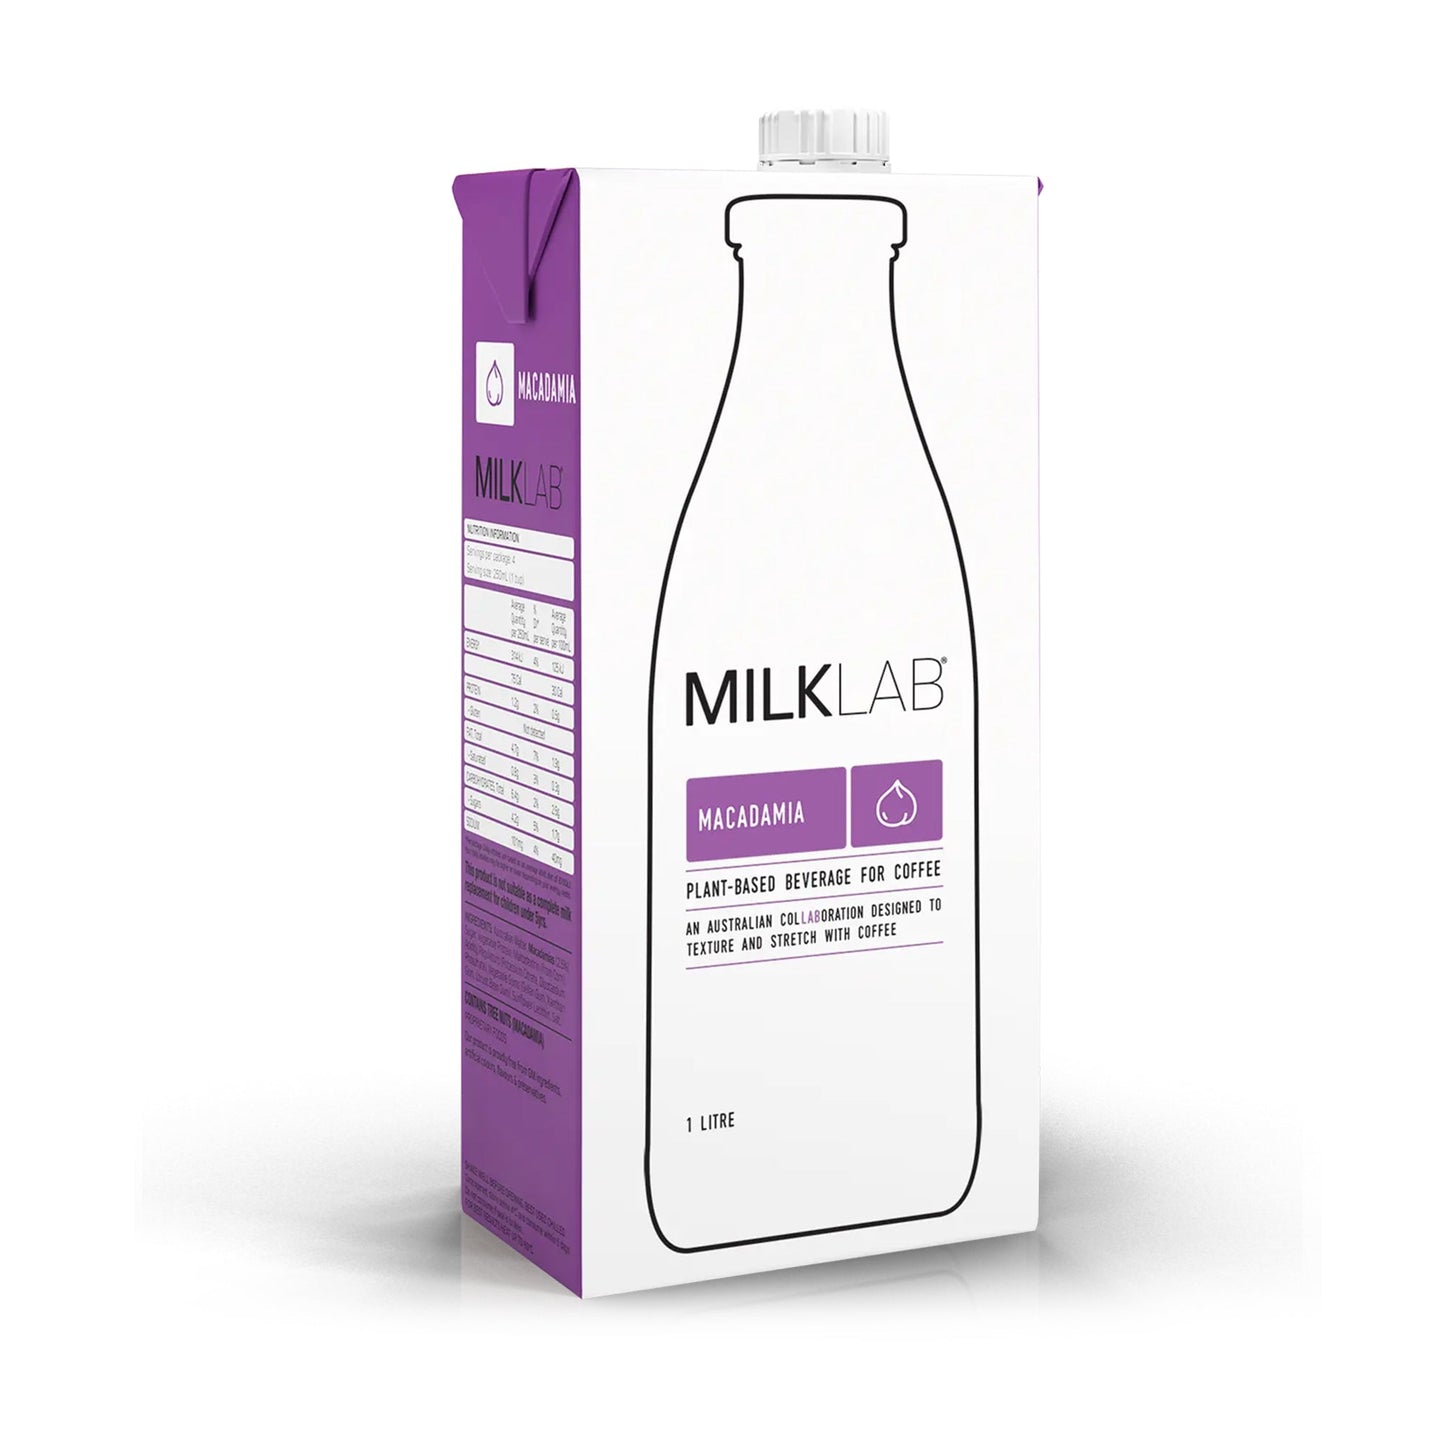 MilkLab-Macadamia.jpg